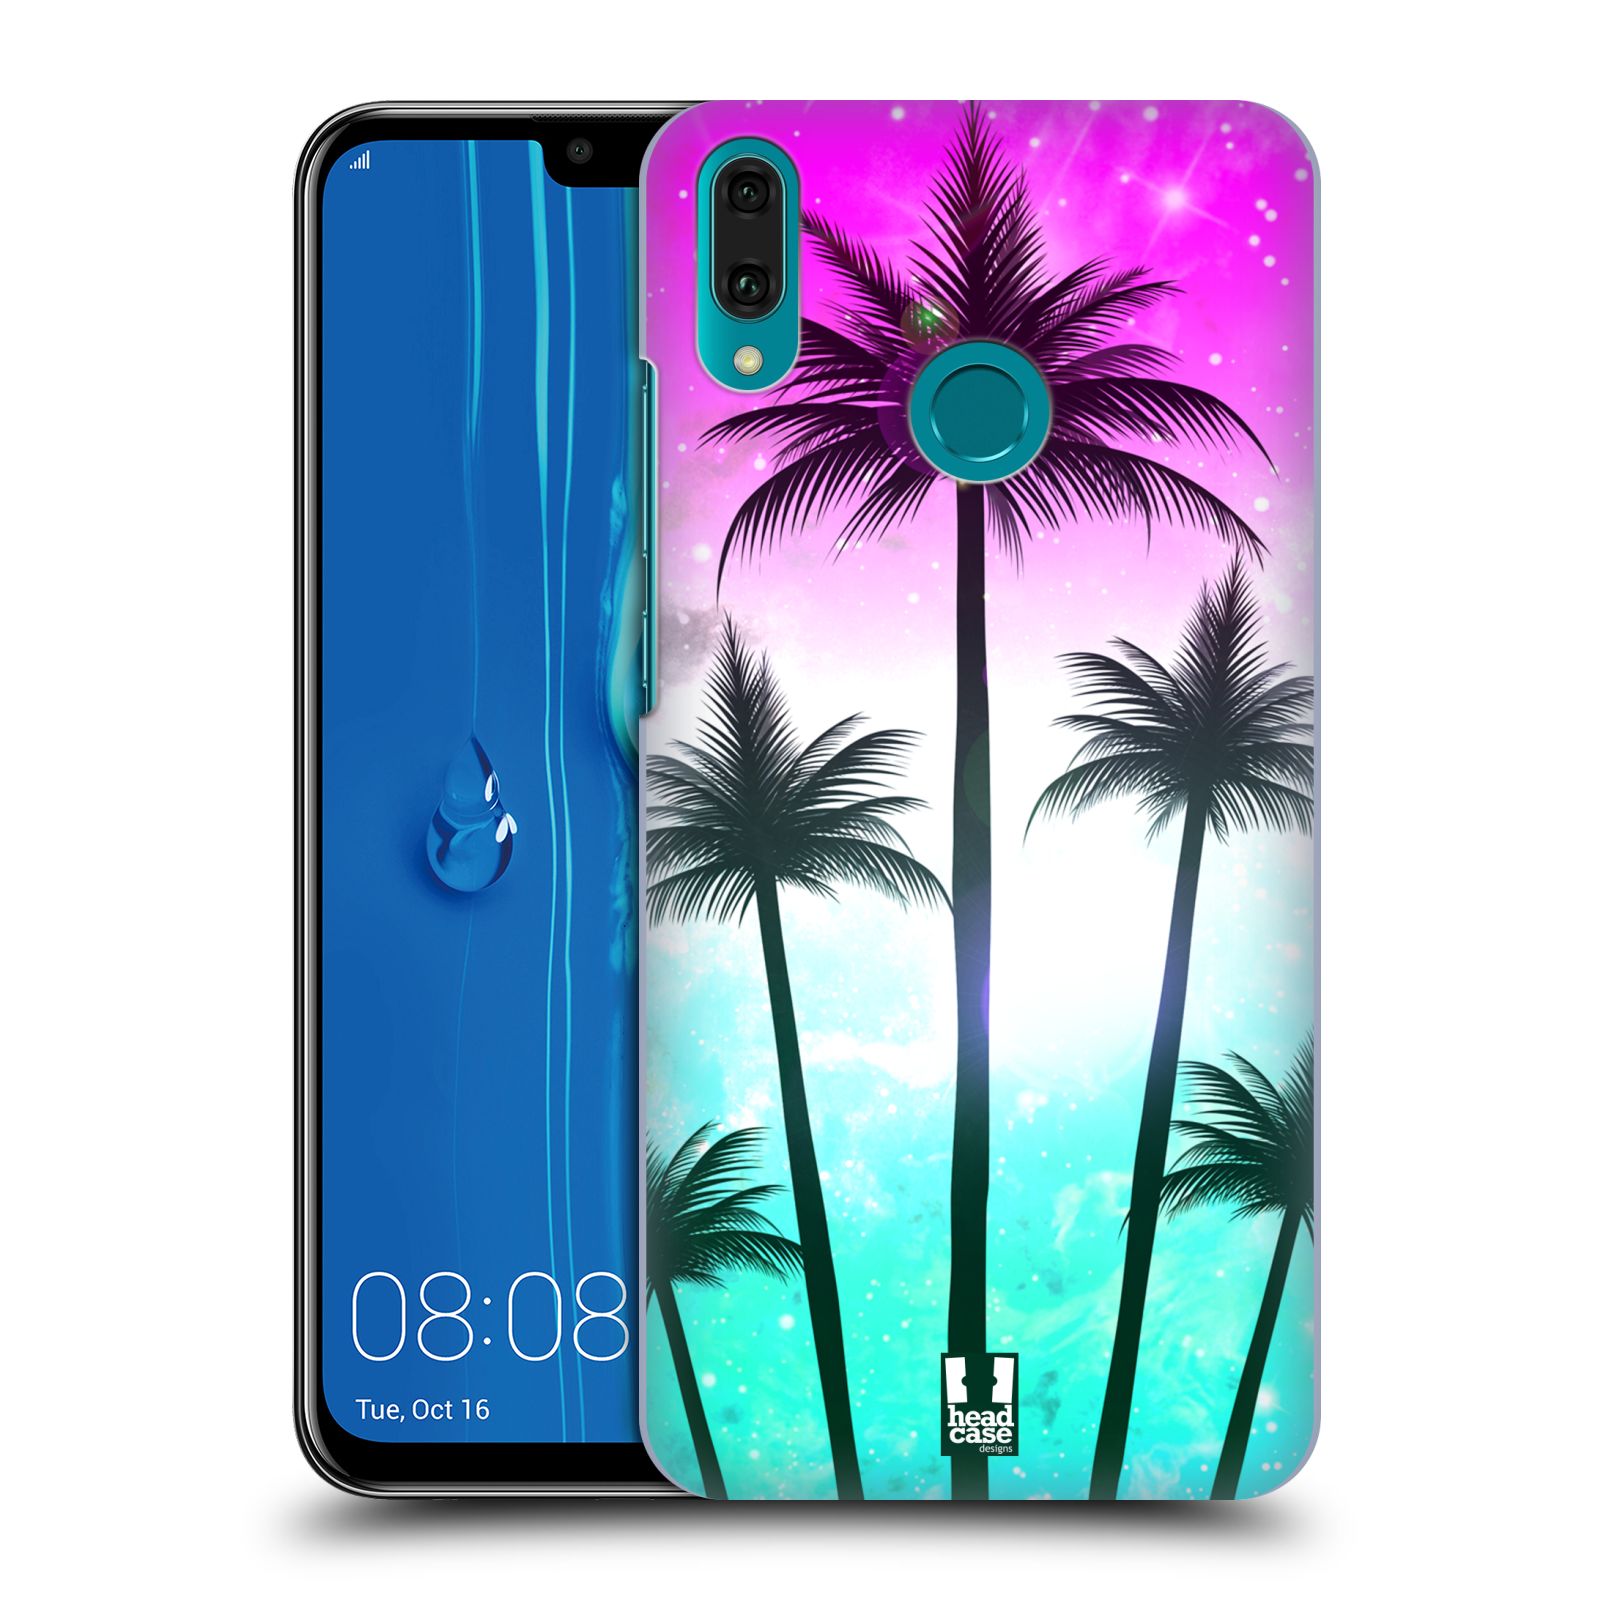 Pouzdro na mobil Huawei Y9 2019 - HEAD CASE - vzor Kreslený motiv silueta moře a palmy RŮŽOVÁ A TYRKYS